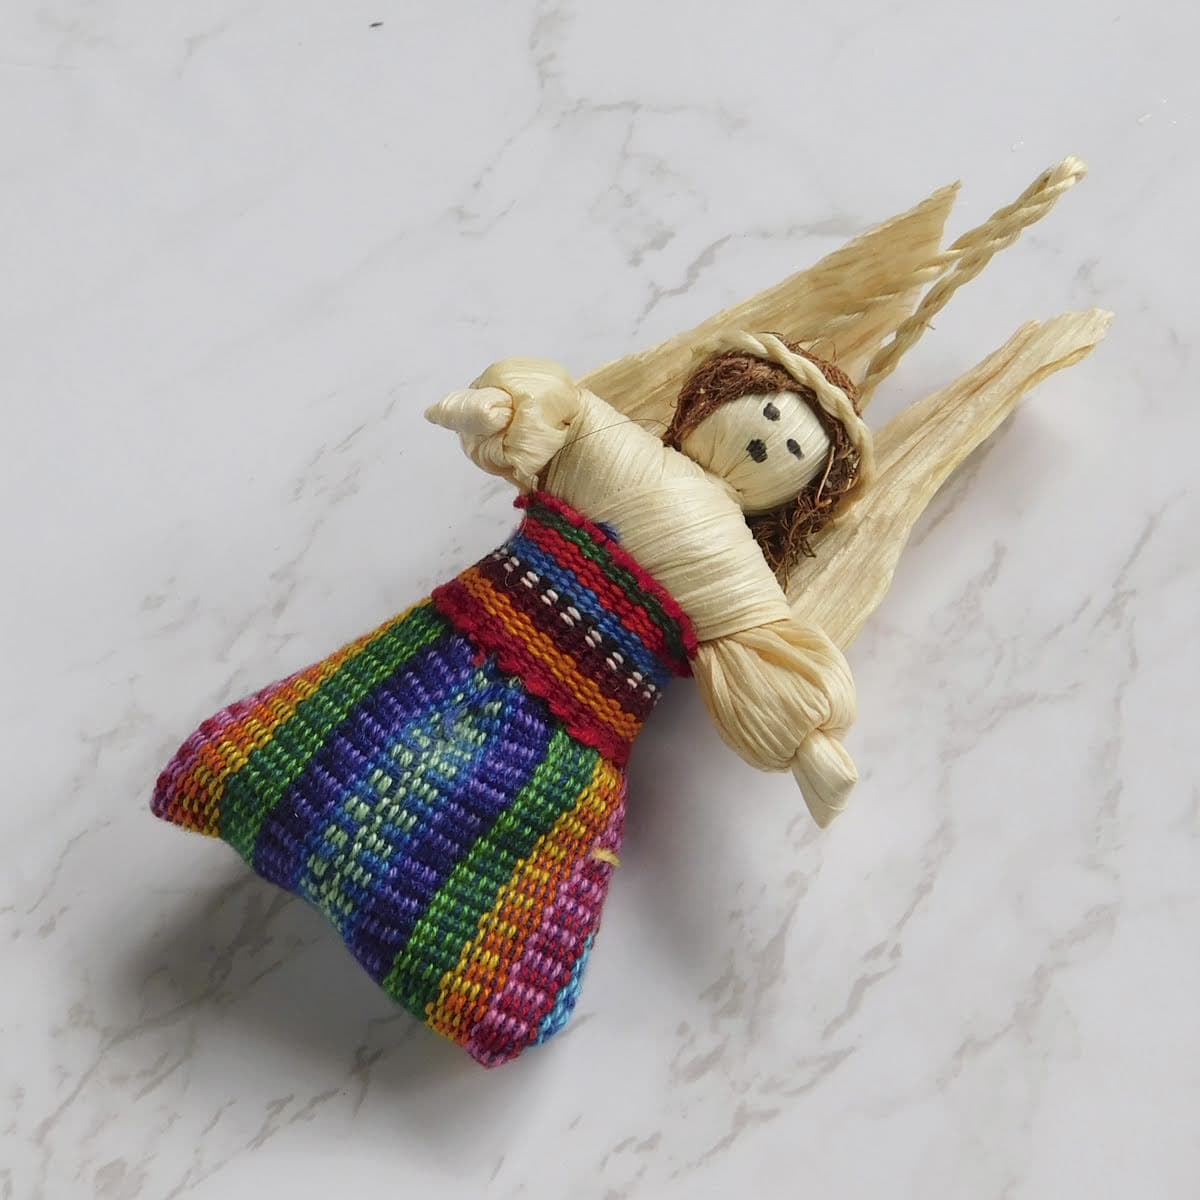 Adorno navideño ángel de tuza con falda típica